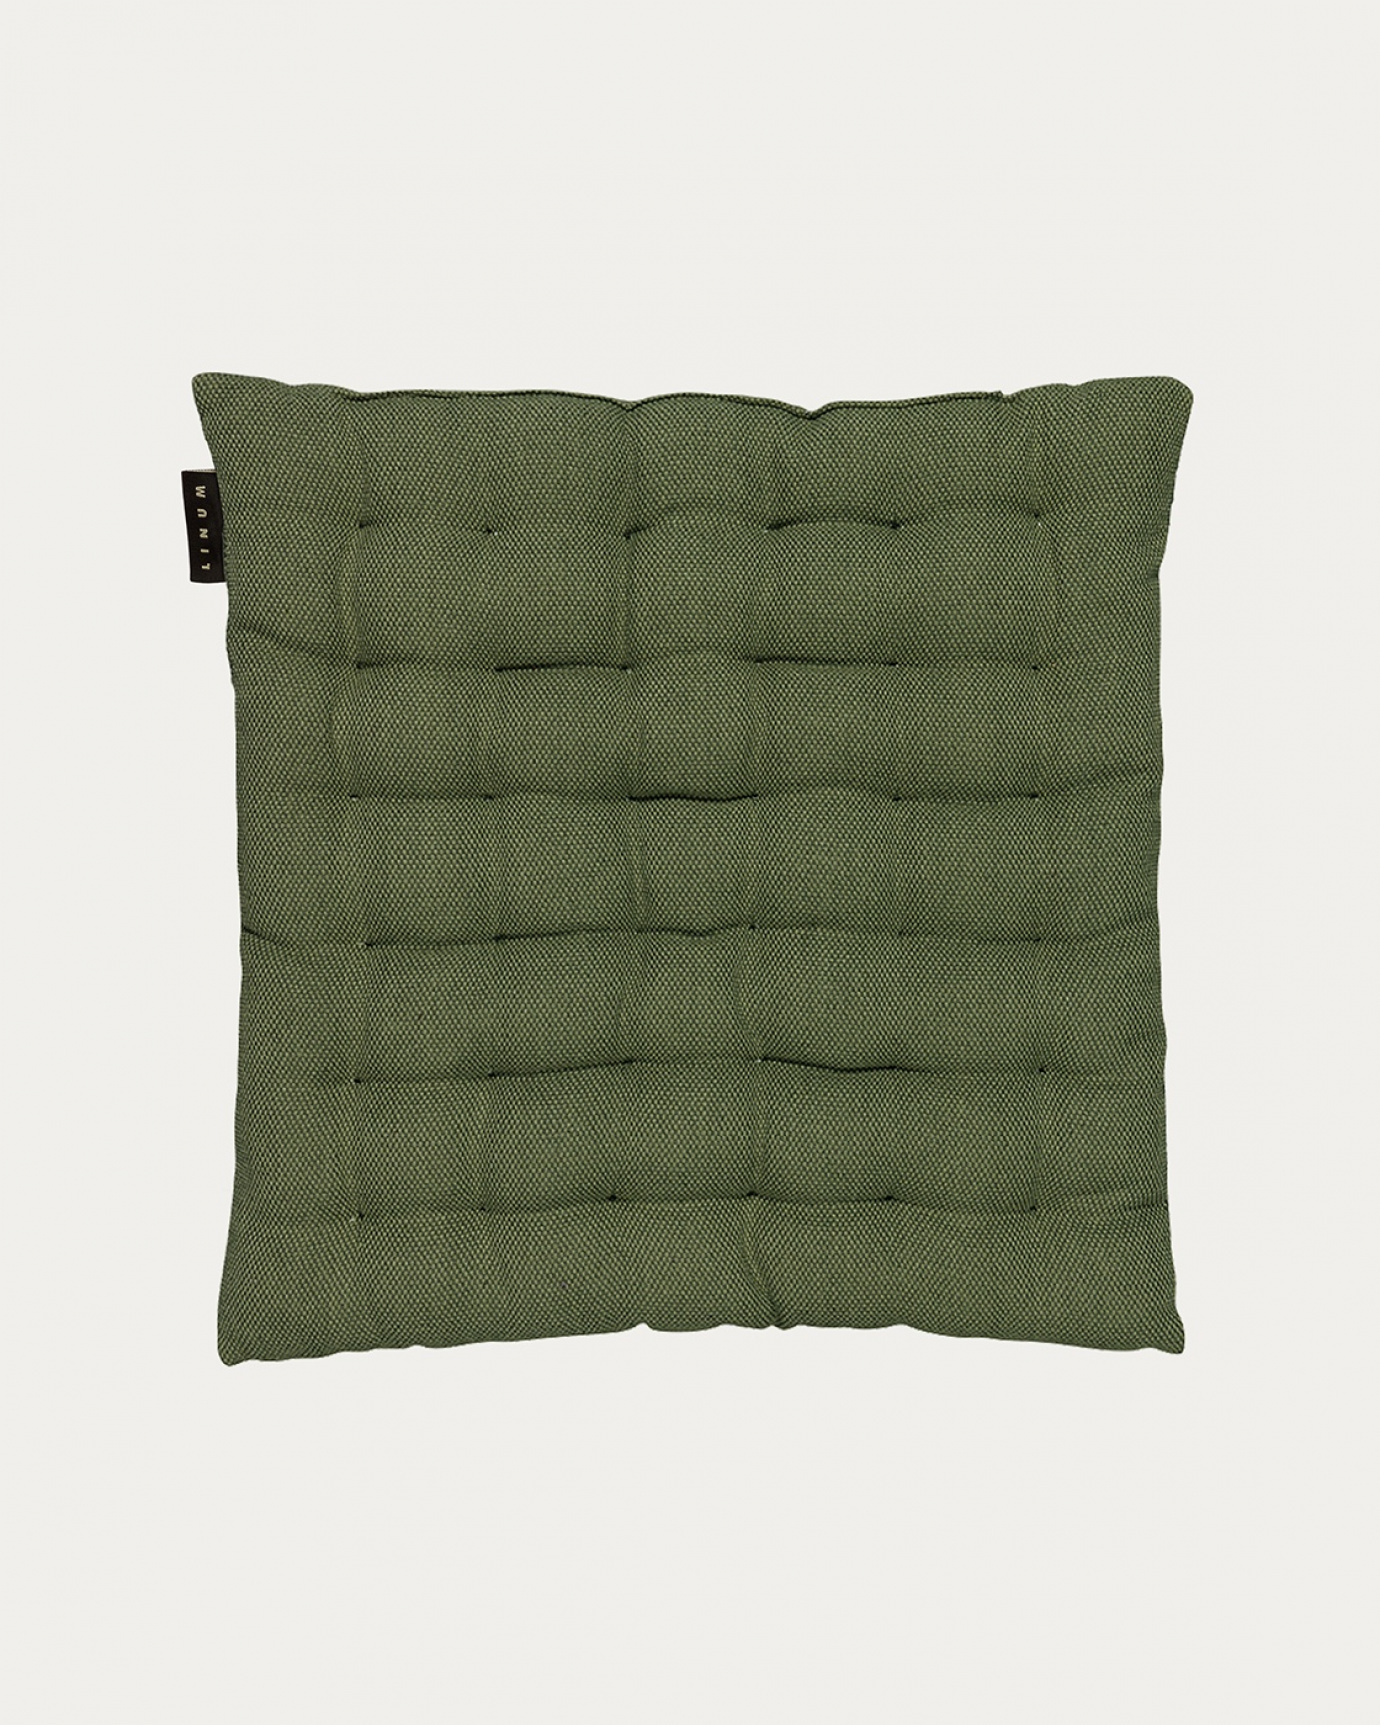 Immagine prodotto verde oliva scuro PEPPER cuscini sedie di cotone con imbottitura in poliestere di LINUM DESIGN. Dimensioni 40x40 cm.